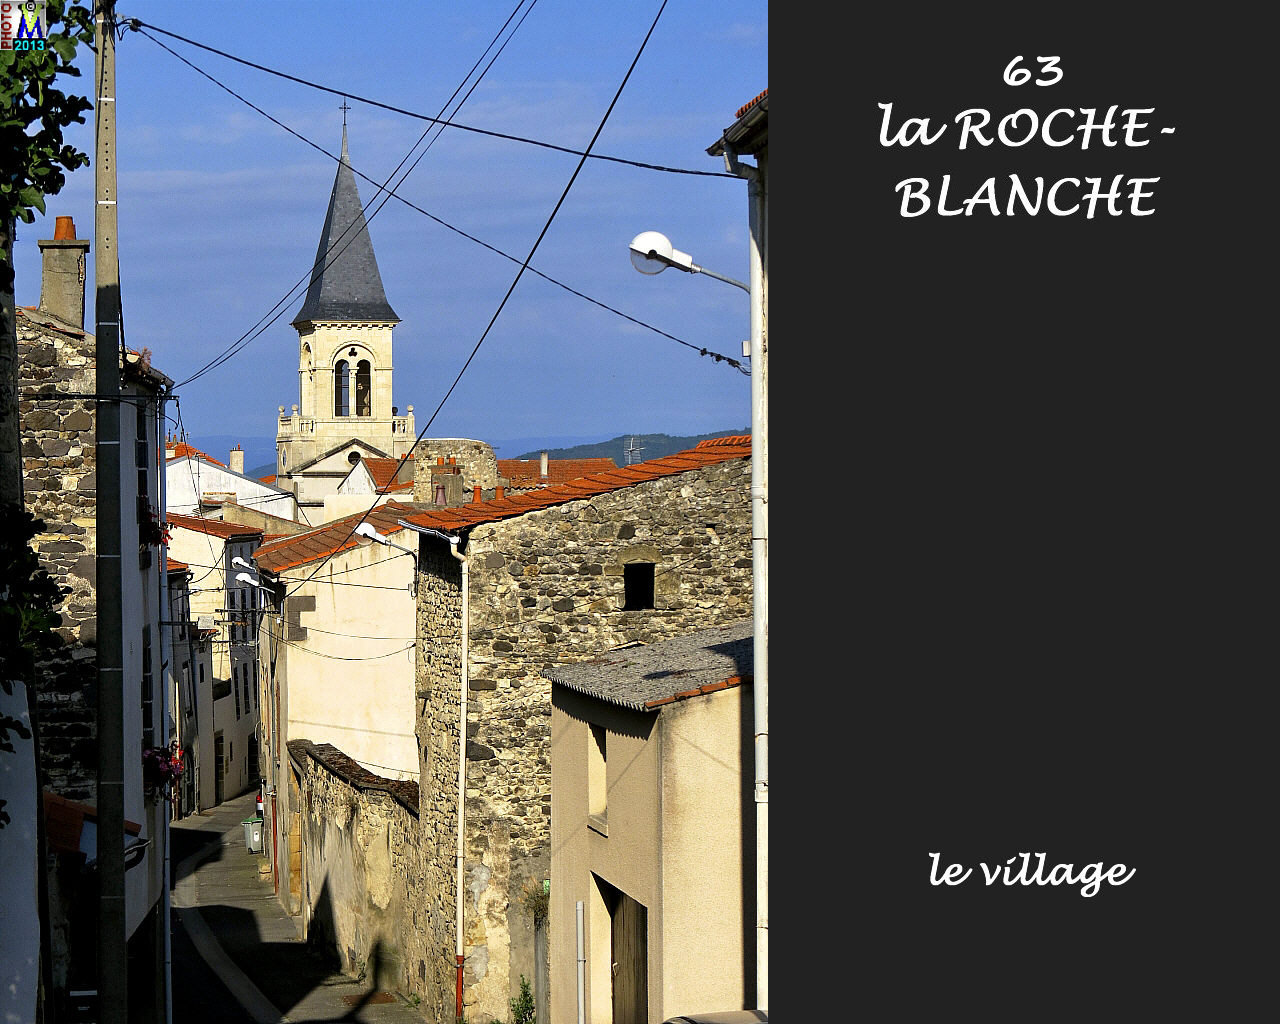 63ROCHE-BLANCHE_village_112.jpg